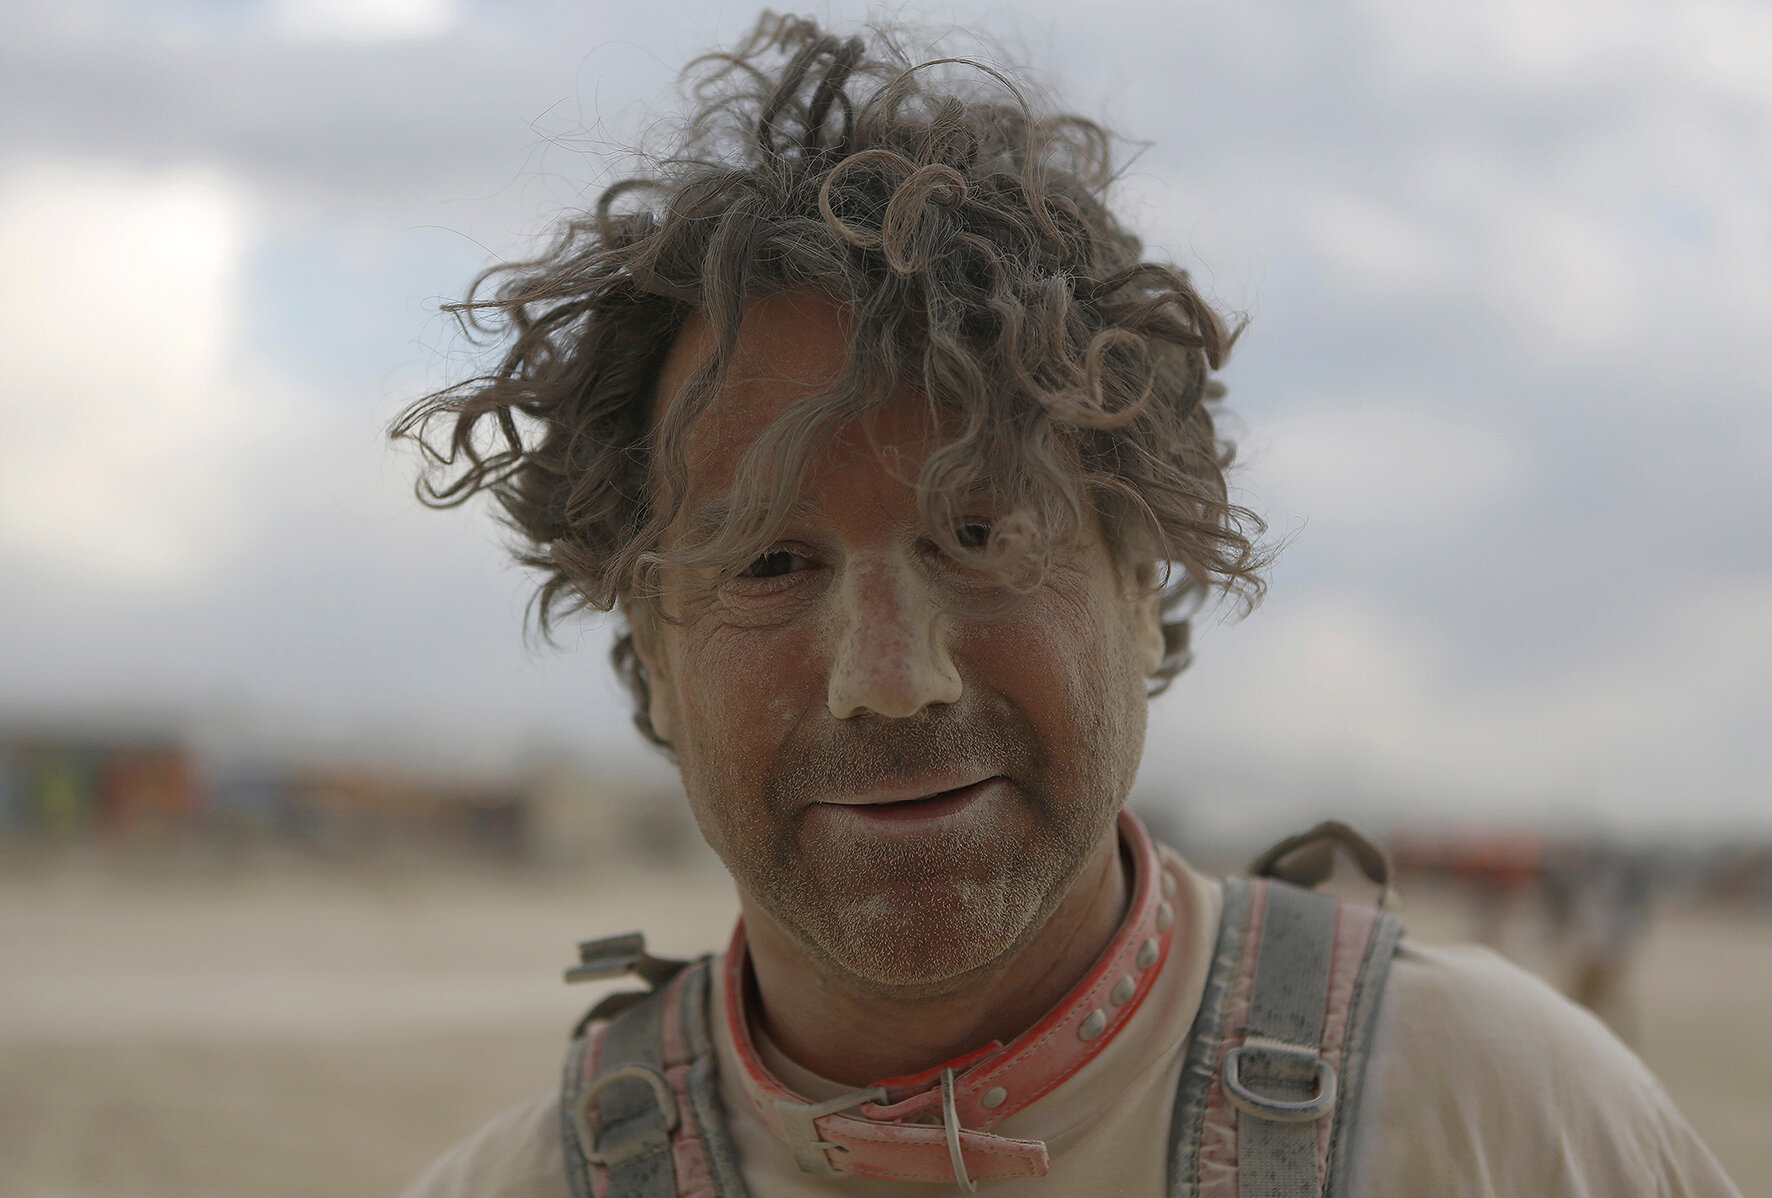 <p>Участник фестиваля Дэвид Хаффман после песчаной бури</p>